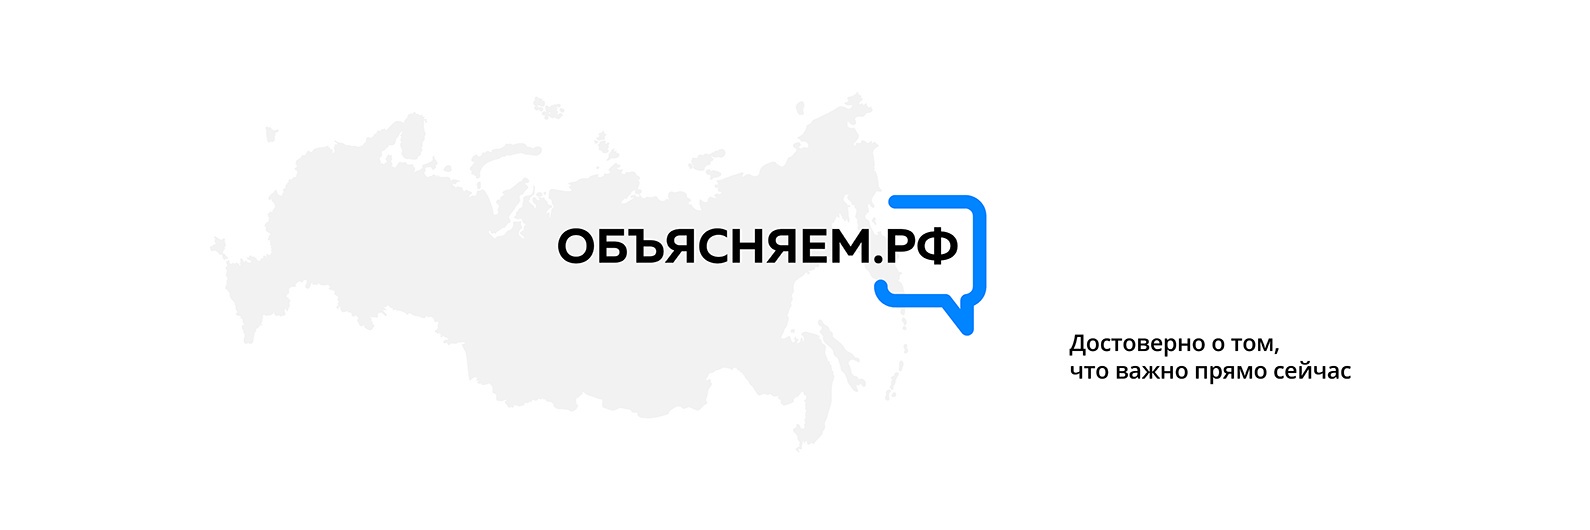 ФОТО к новости: Правительство запускает информационный портал для граждан «Объясняем.рф»